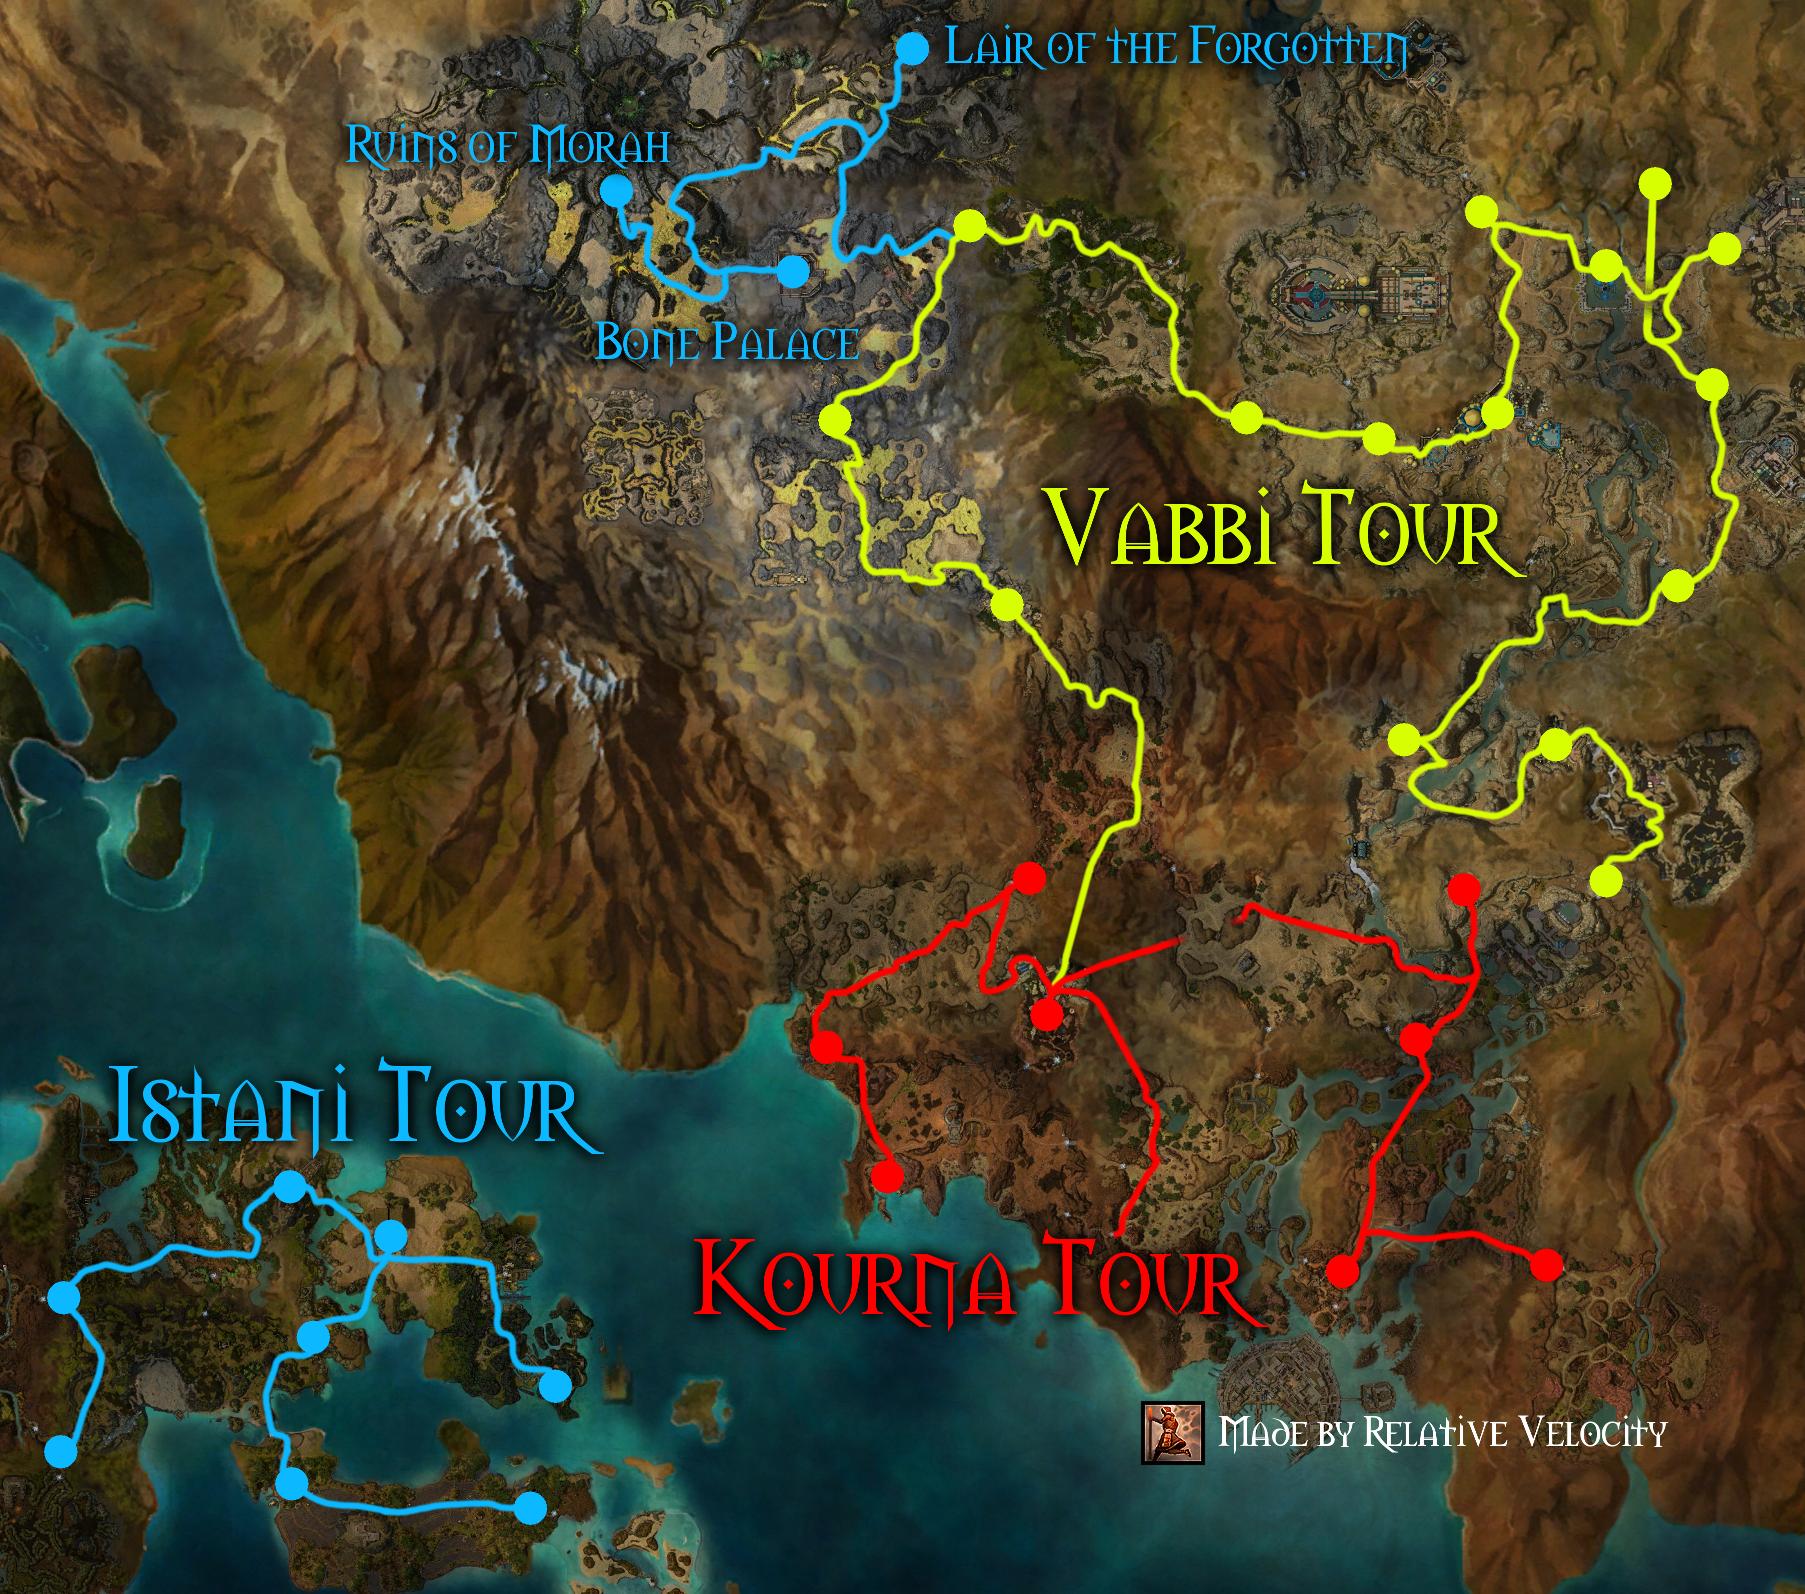 hurtworld map manangatang